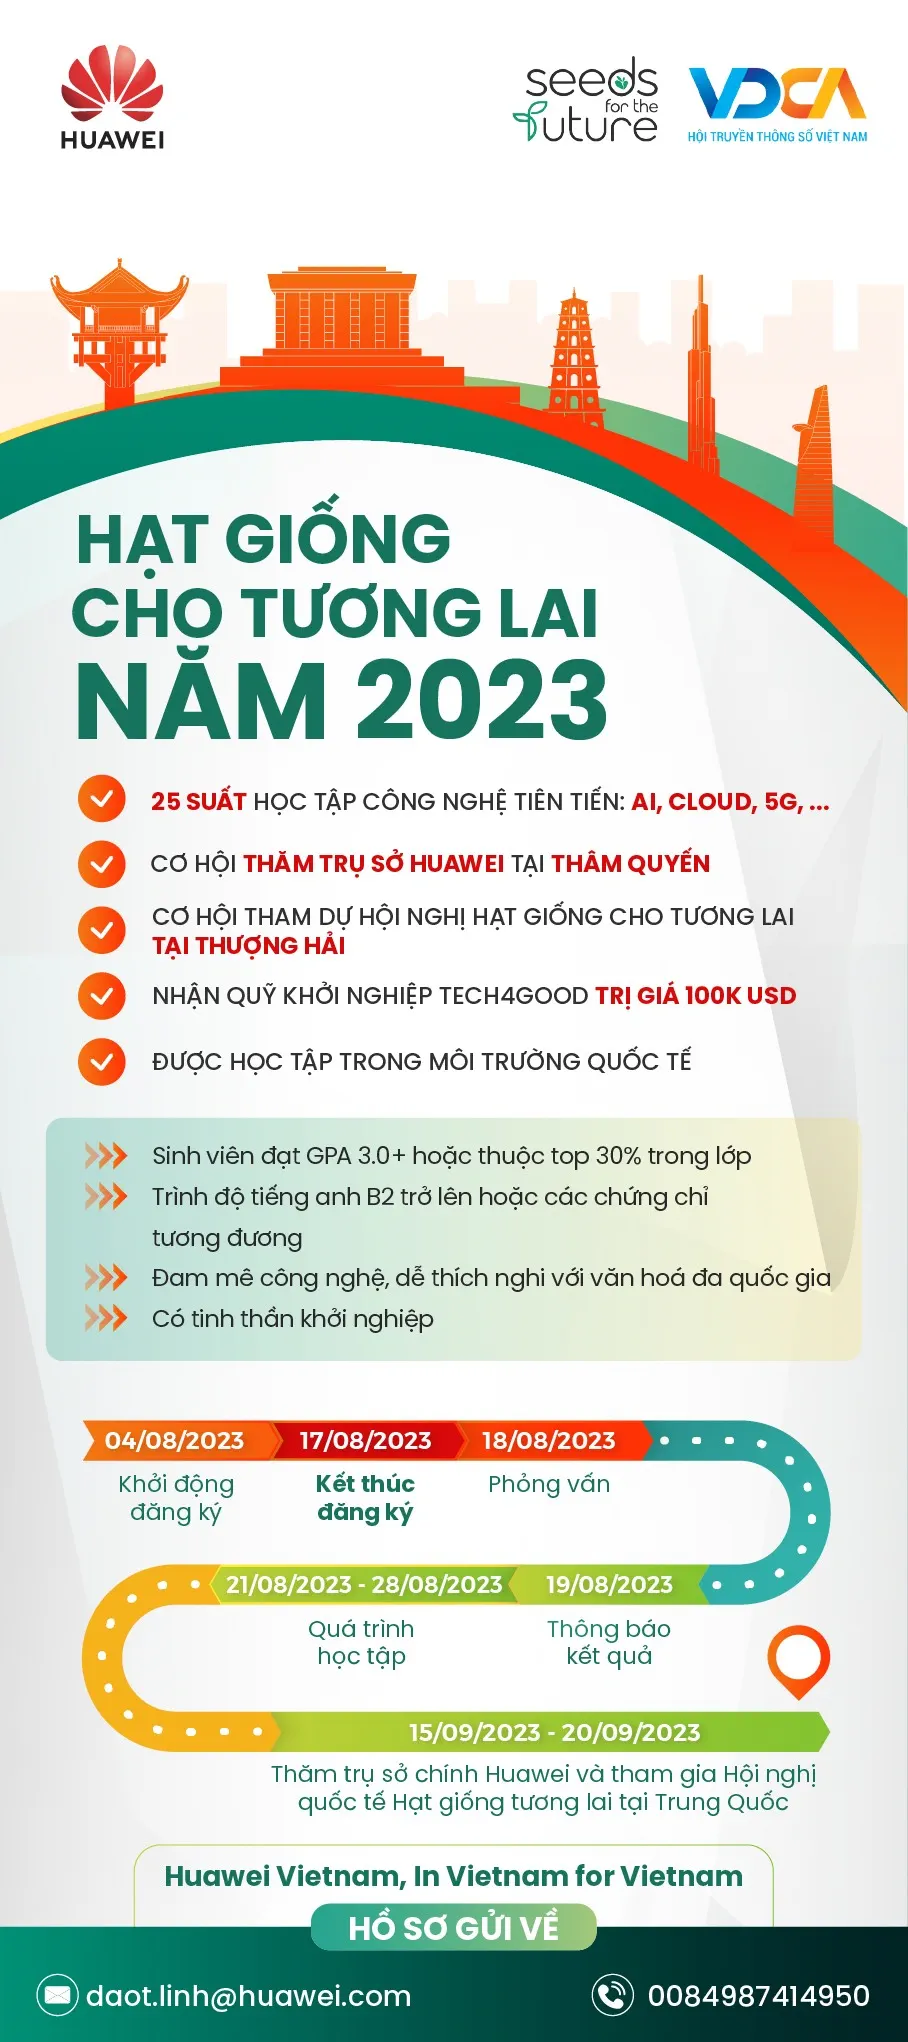 Huawei Việt Nam và VDCA tổ chức chương trình “Hạt giống cho Tương lai 2023” mùa 8